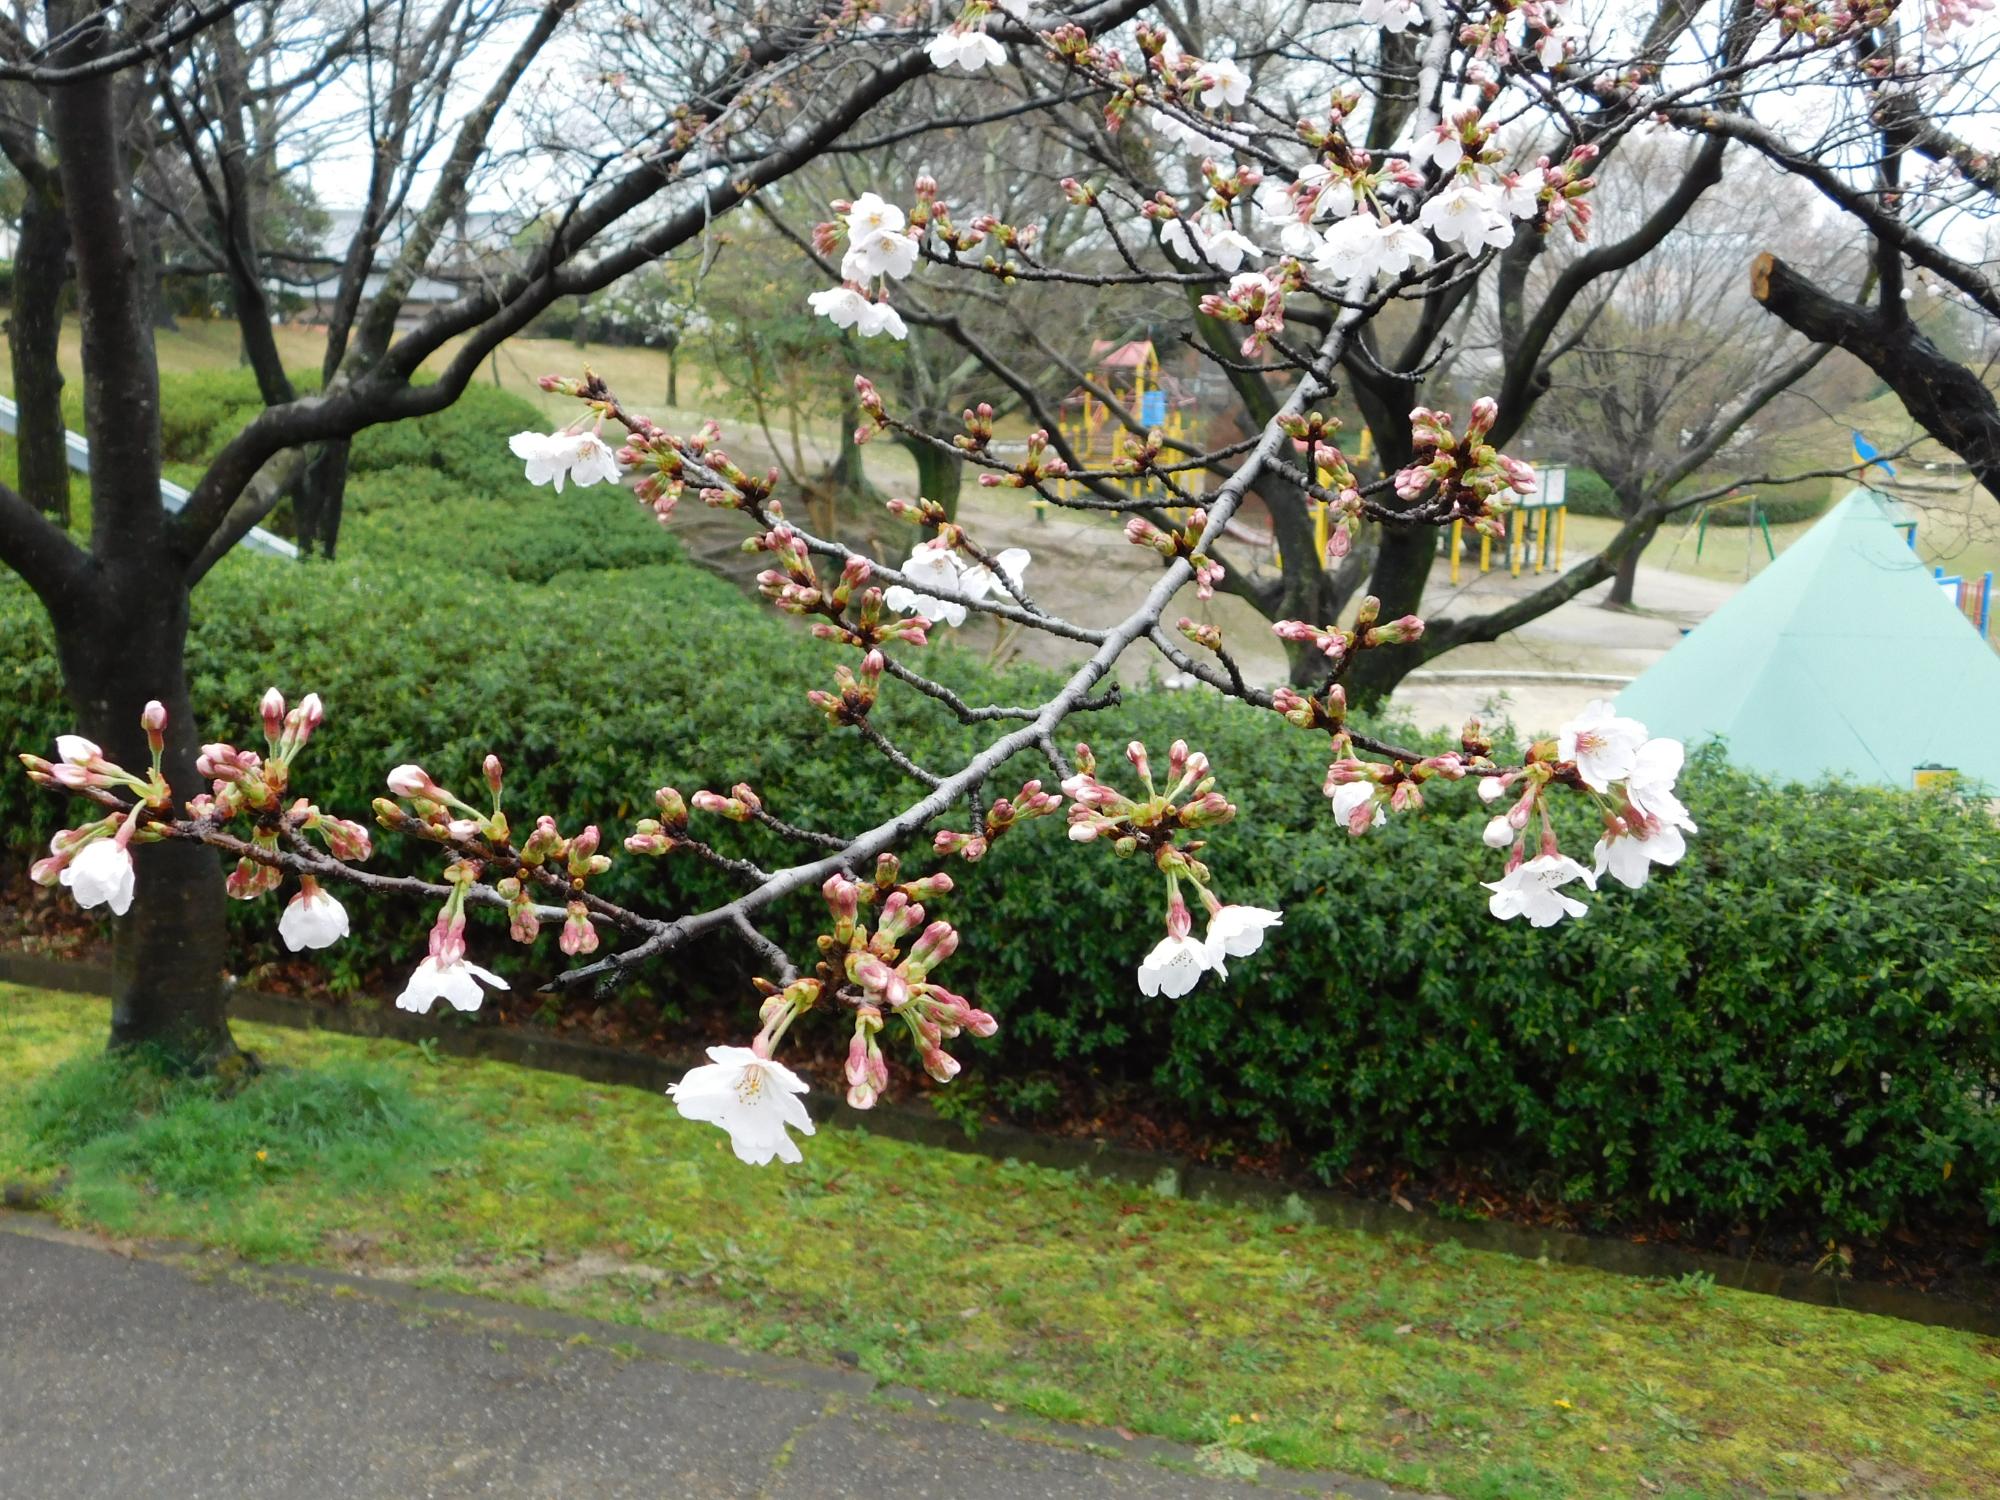 ソメイヨシノの開花状況です。暖かい気候から一日一日と開花が進んでいます。